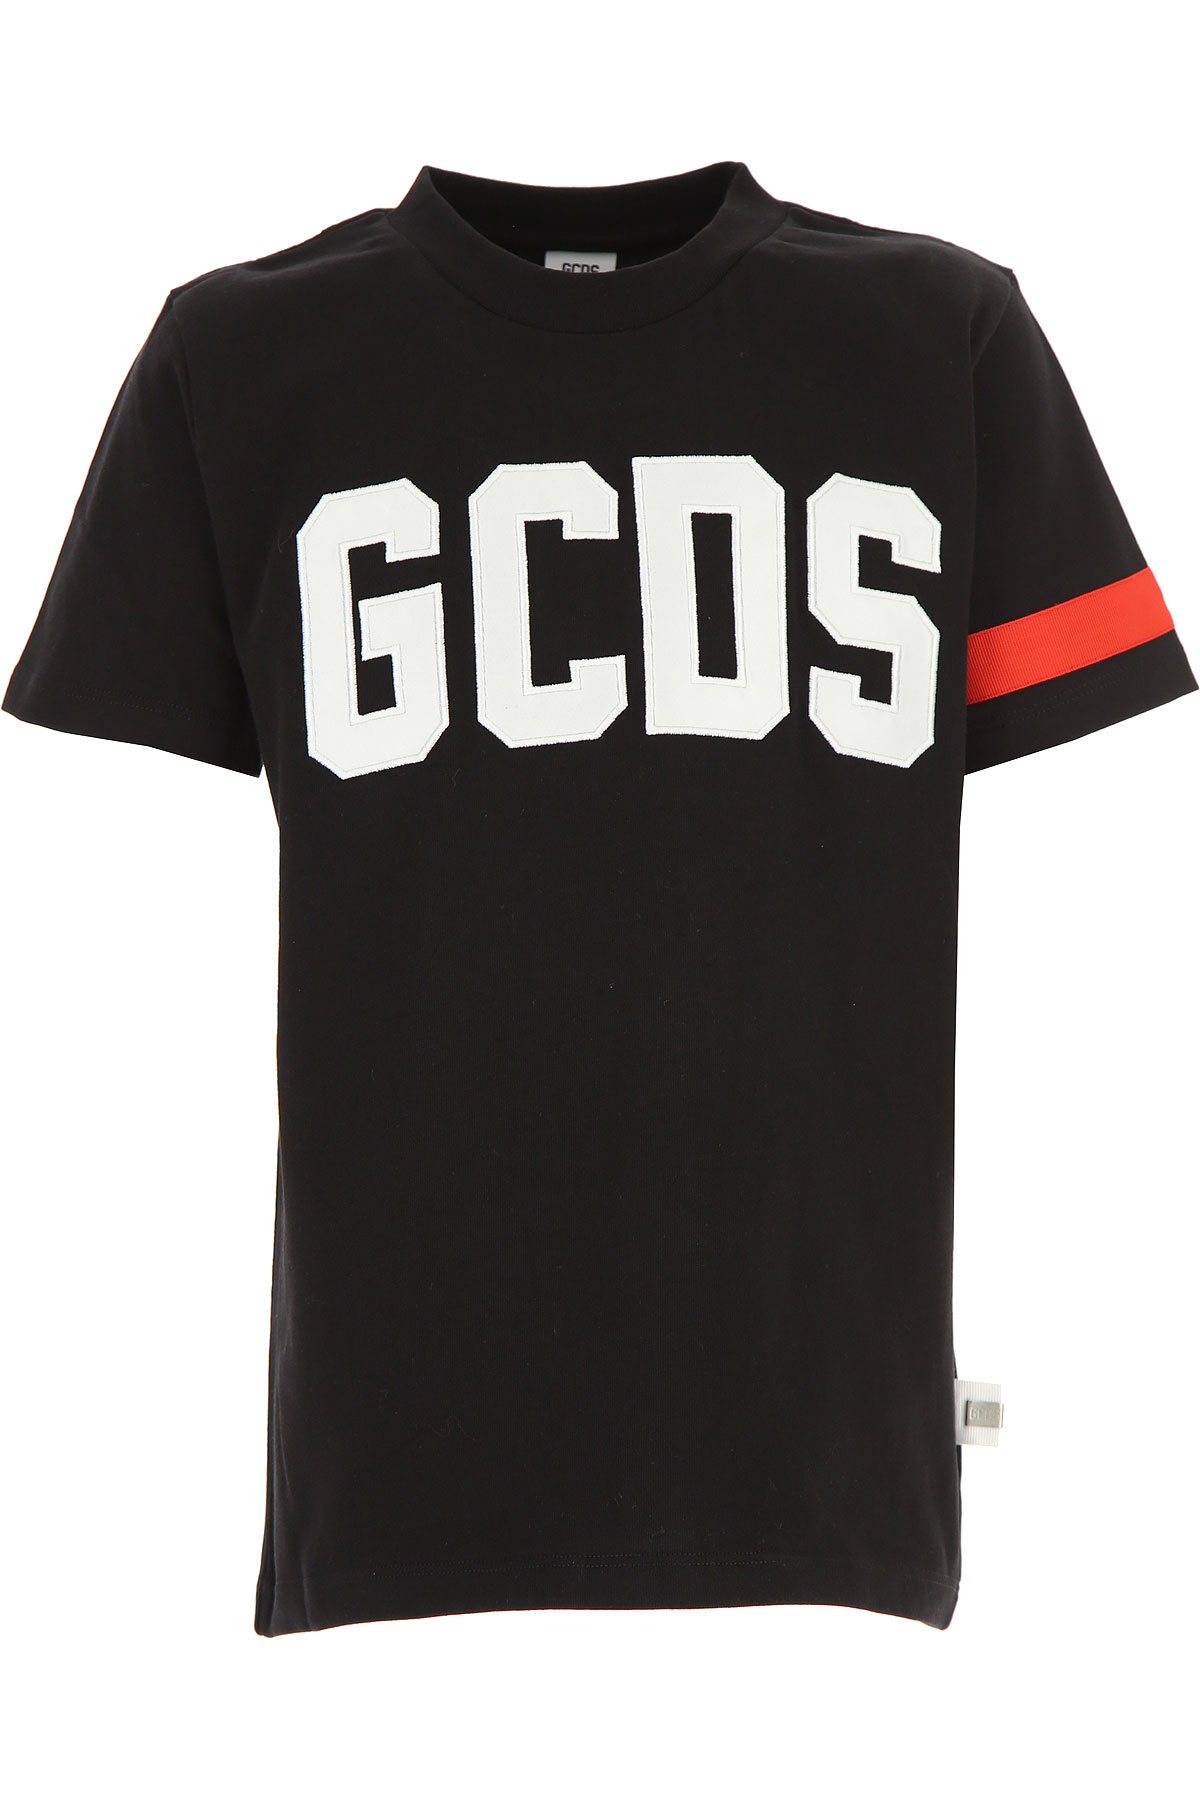 Kidswear GCDS, Style code: 019492-110-